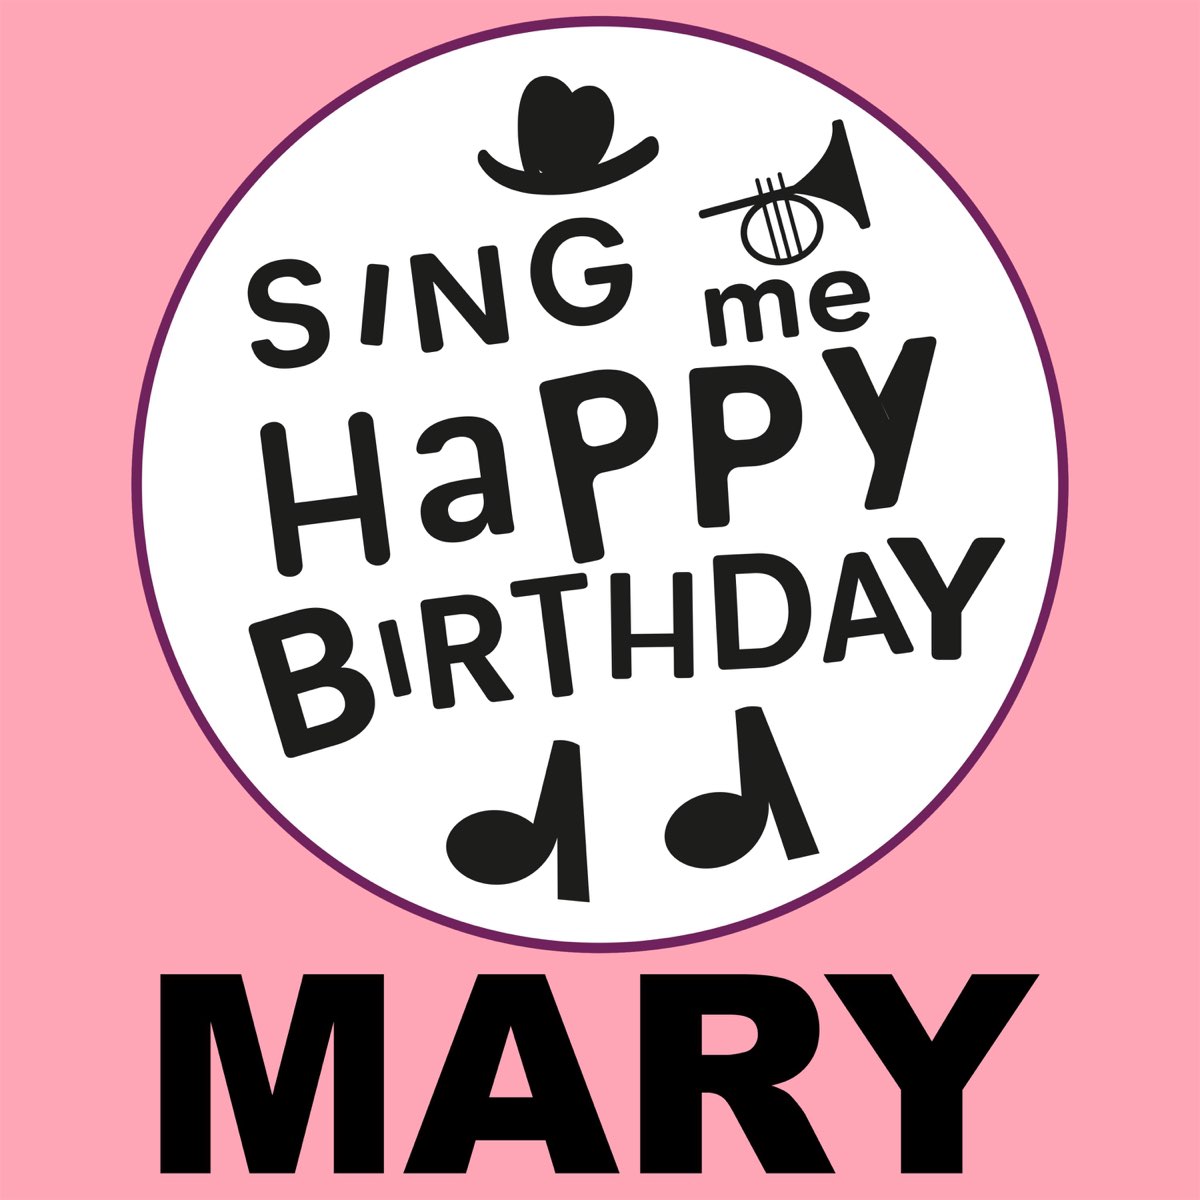 Mary sang